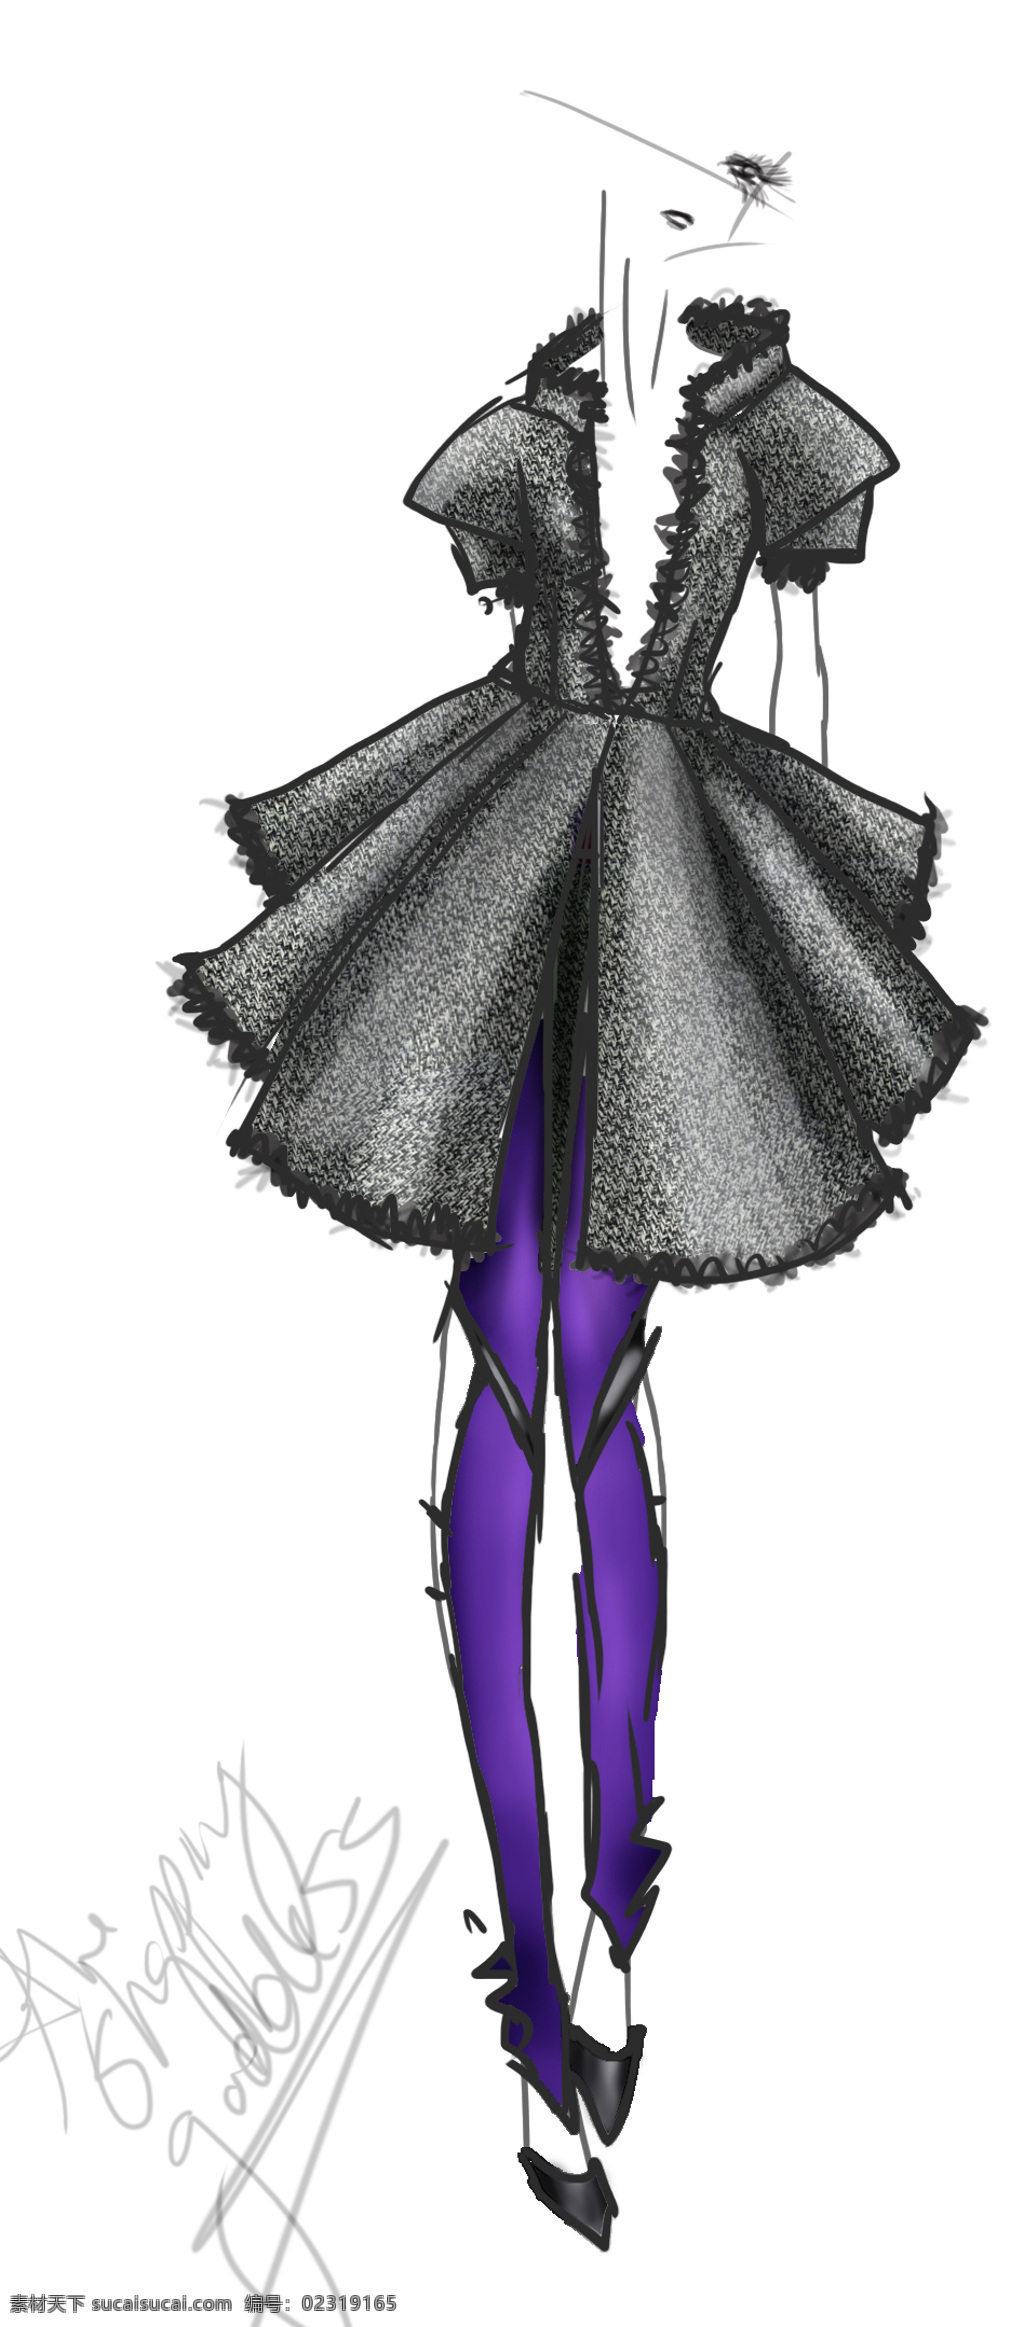 黑色 连衣裙 紫色 打底 裤 设计图 服装设计 时尚女装 职业女装 职业装 女装设计 效果图 短裙 衬衫 服装 服装效果图 打底裤